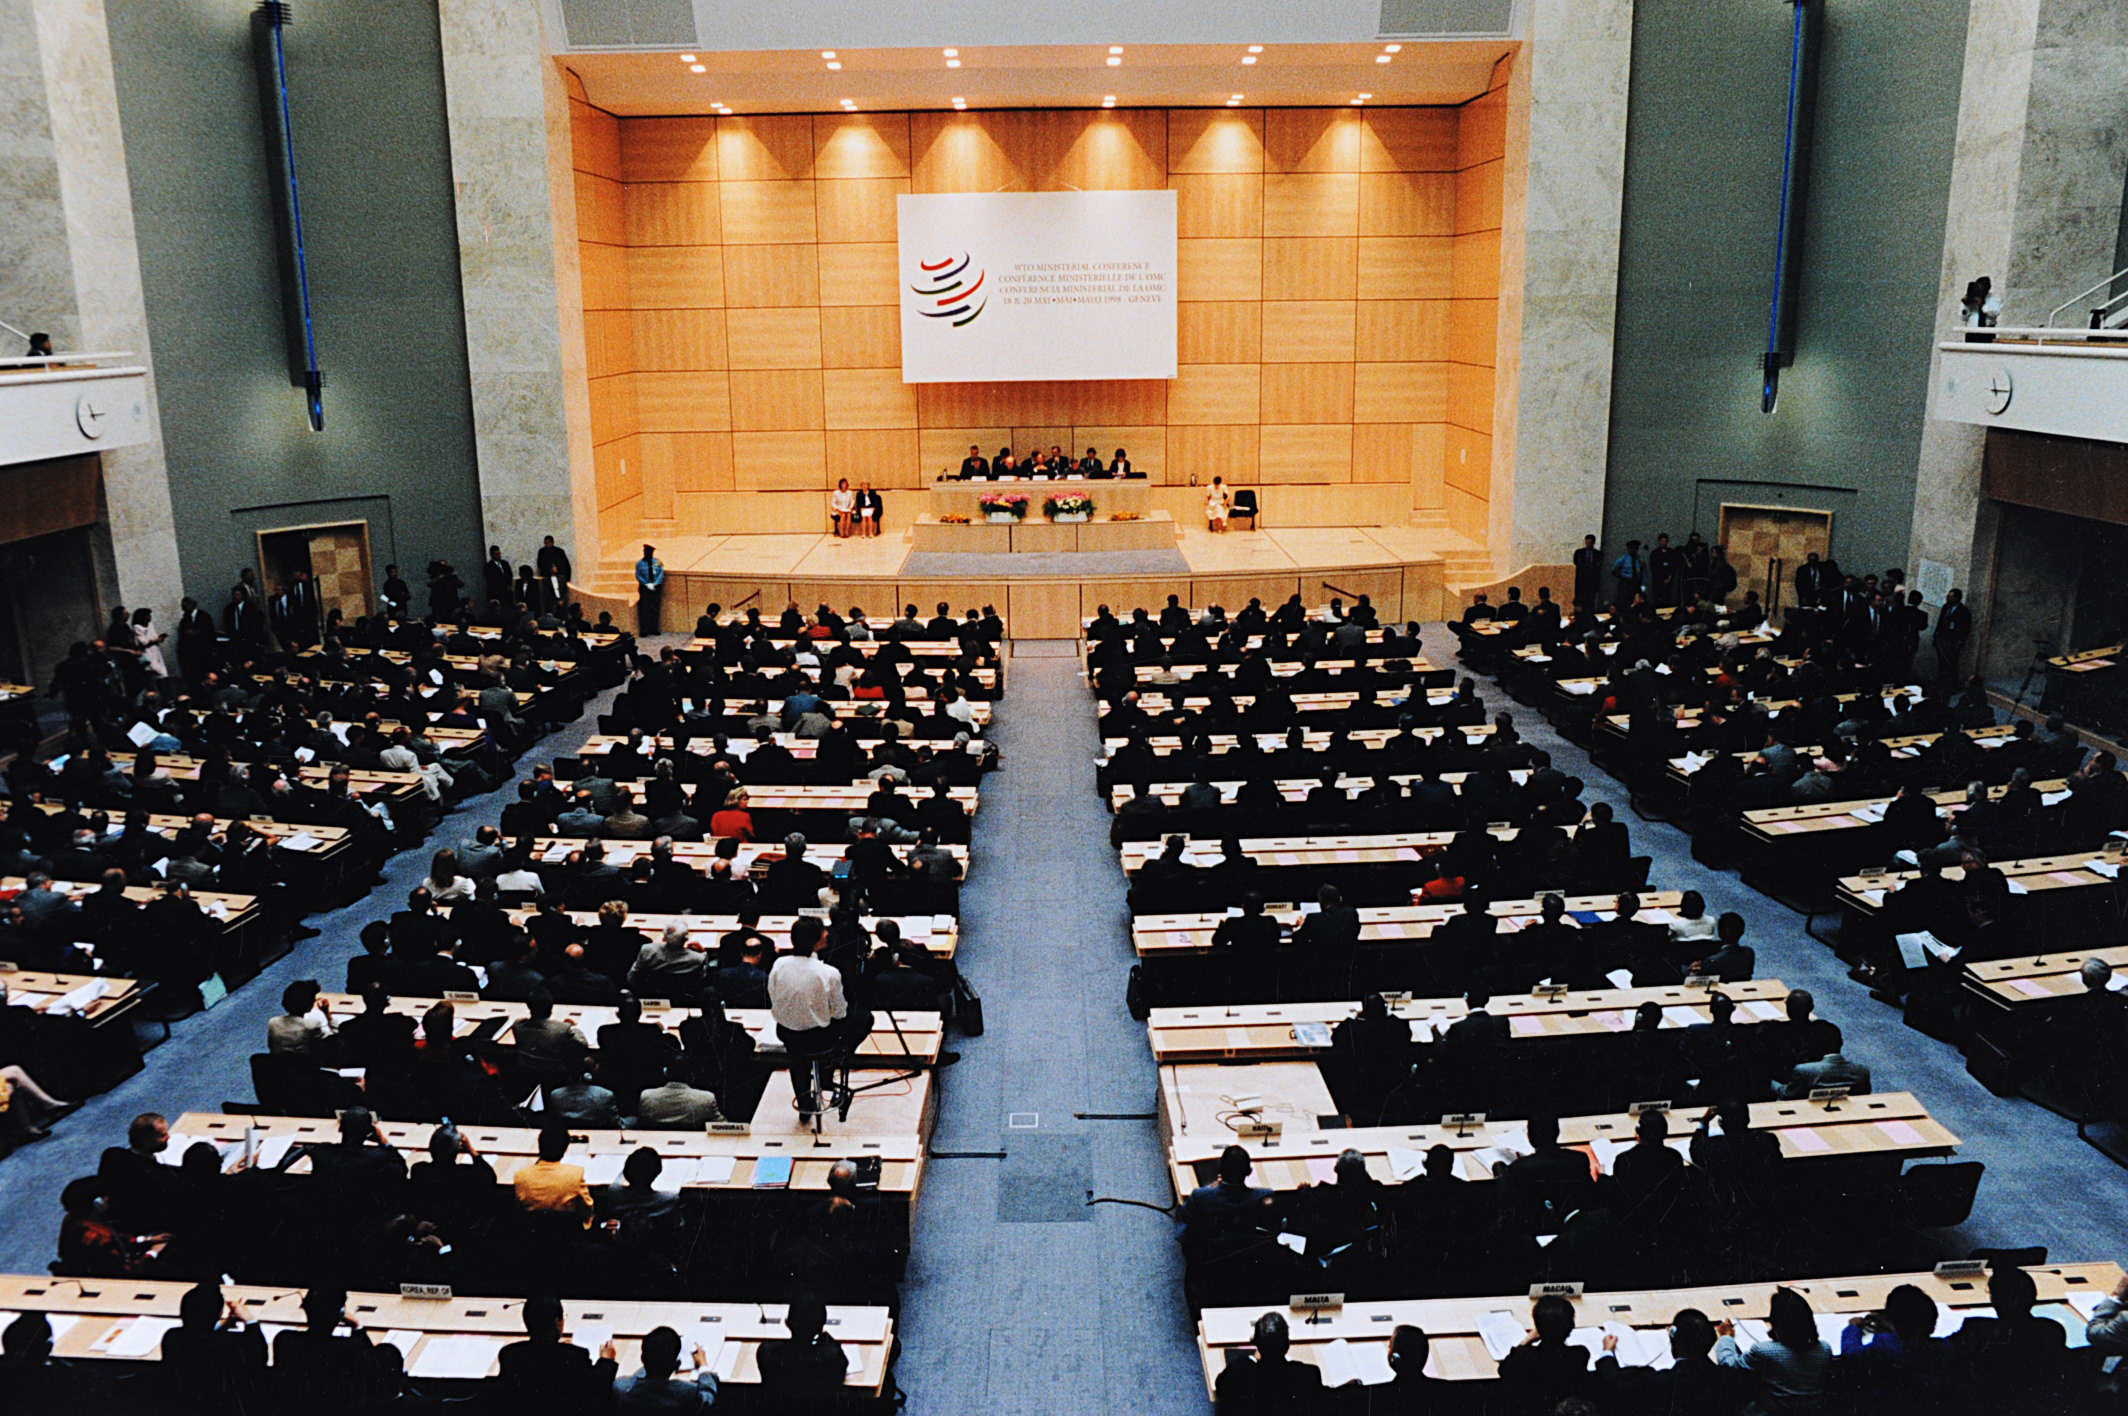 Argentina reunión de la OMC no debe excluir a la sociedad civil